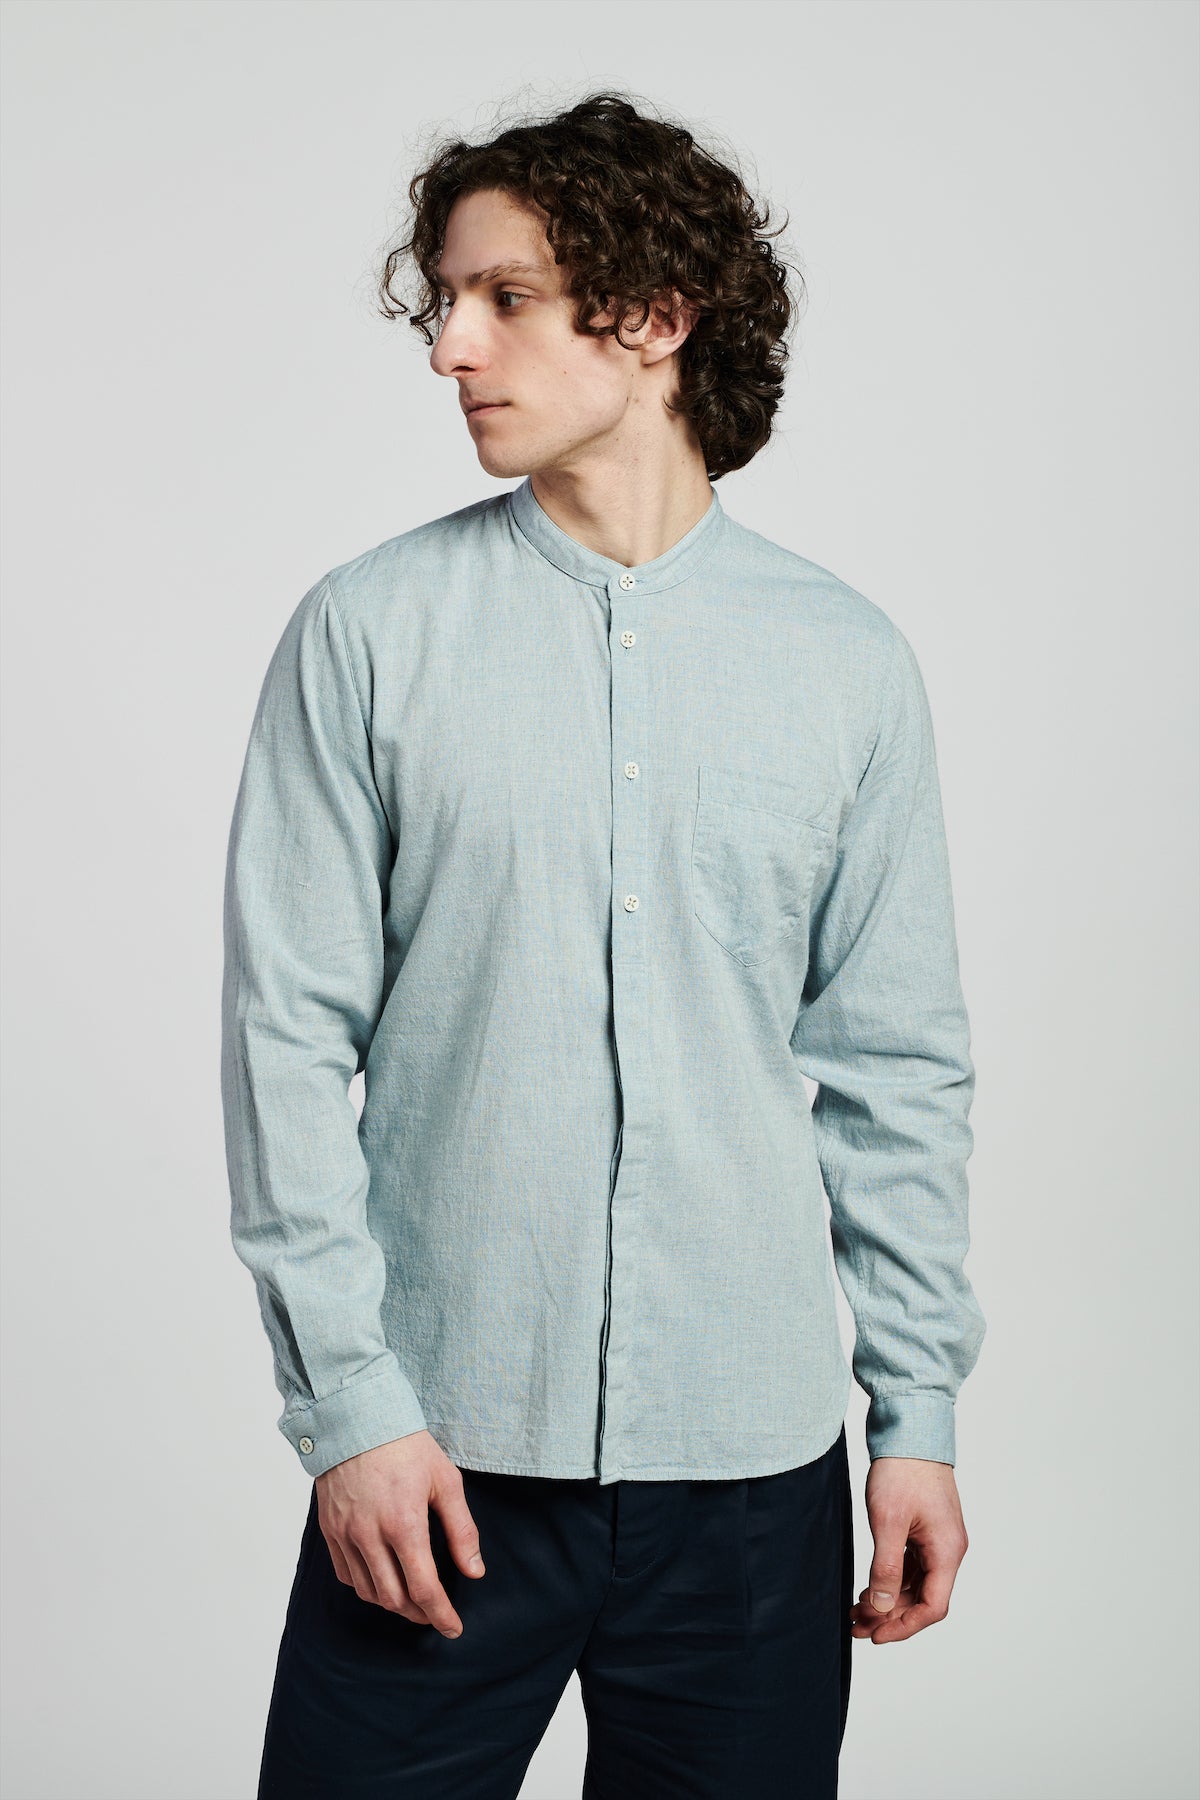 Zen Shirt in a Grey Blue Japanese Organic Cotton and Linen